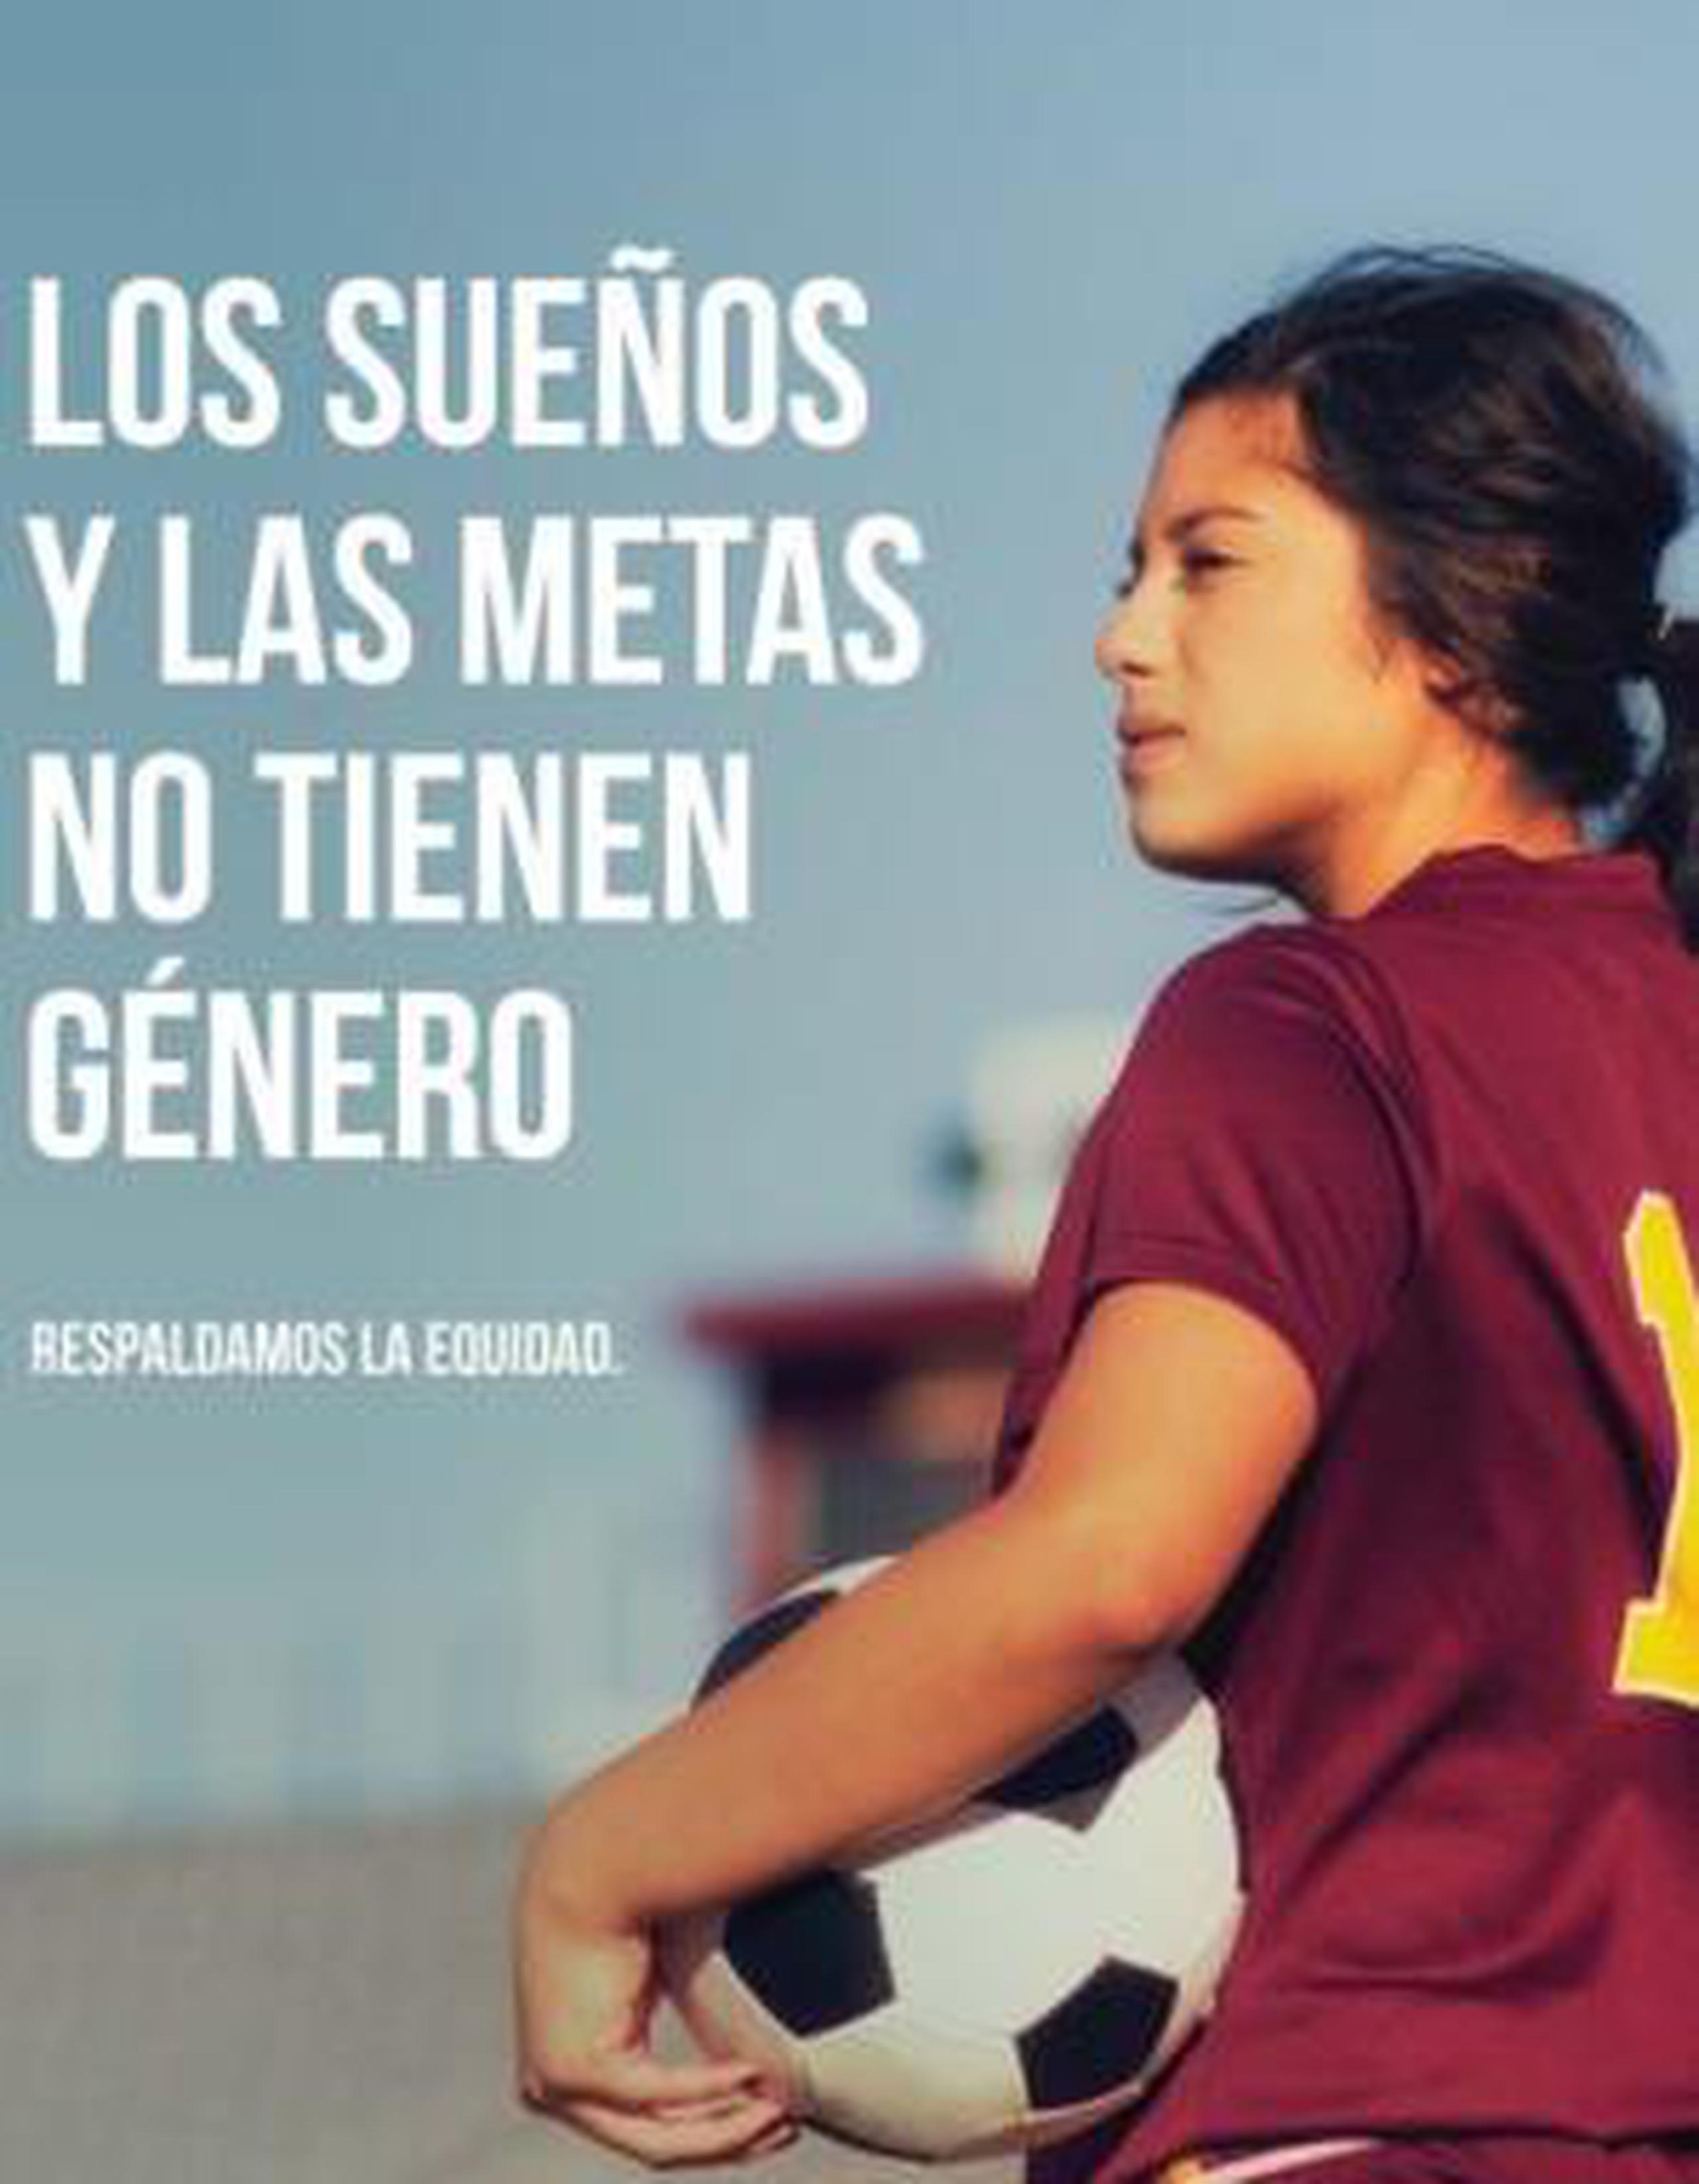 Imagen de uno de los afiches de la campaña “Las metas y los sueños no tienen género, respaldemos la equidad”. (Suministrada)